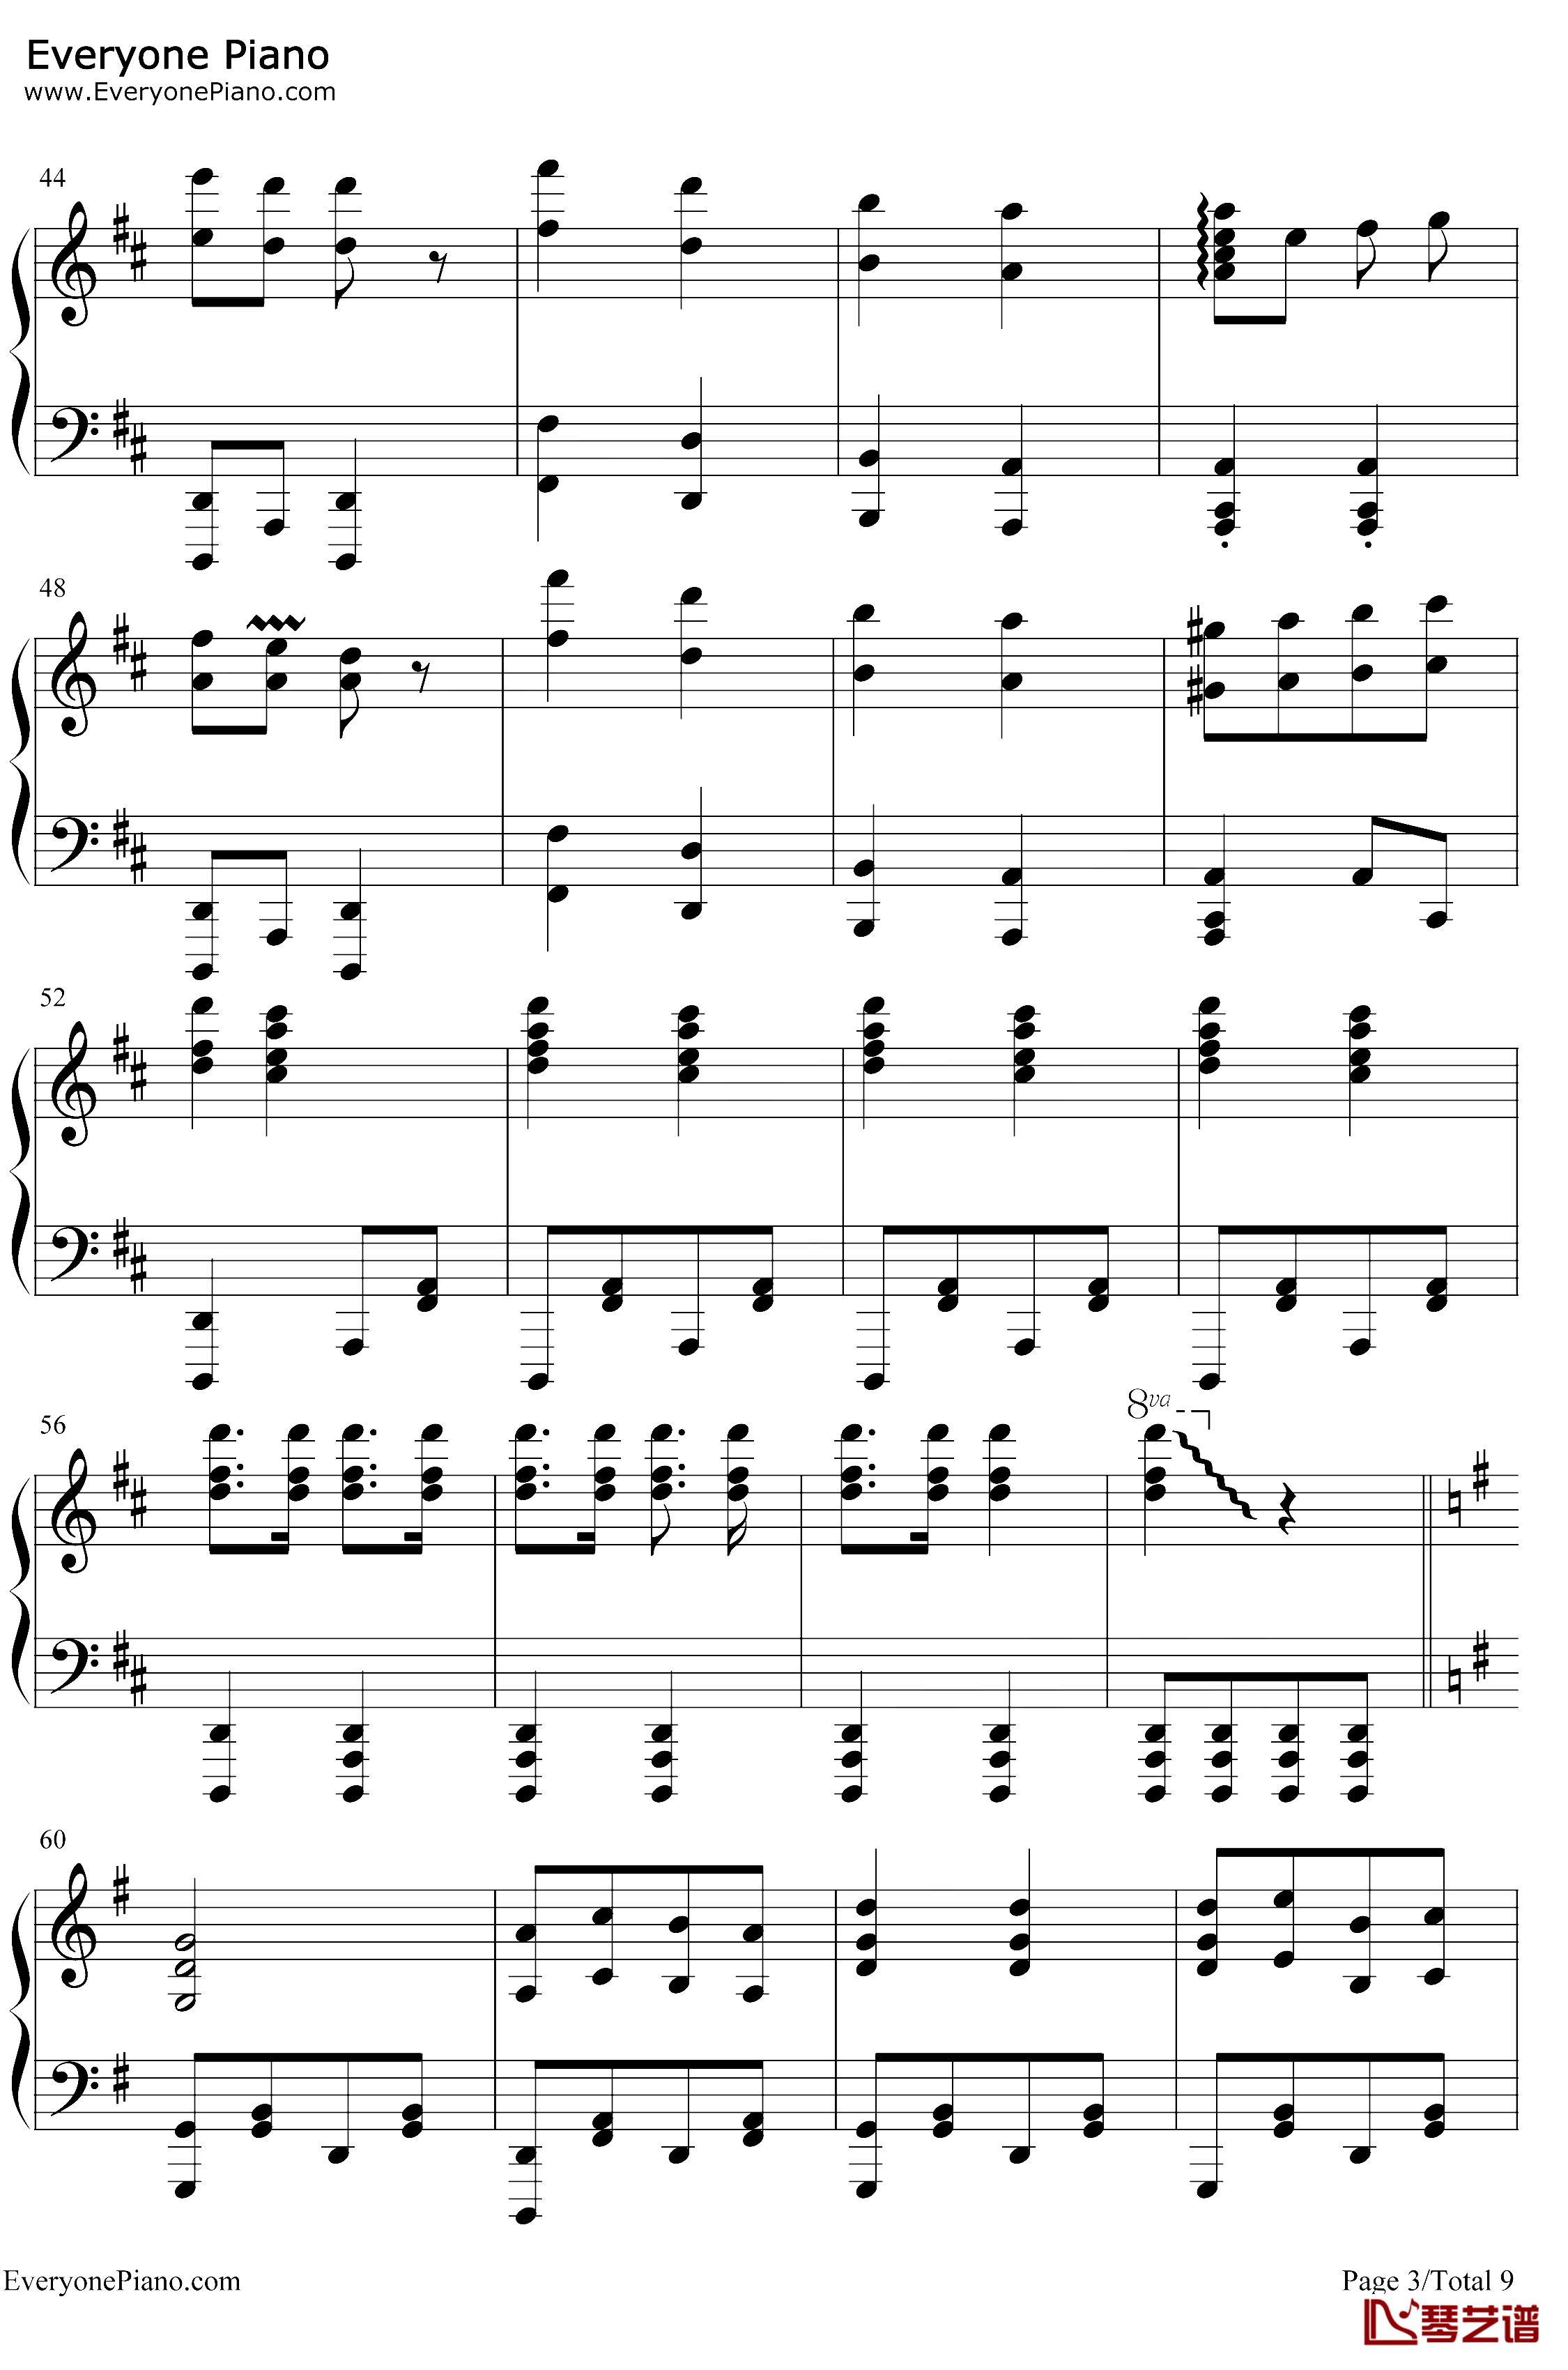 康康舞曲钢琴谱-雅克·奥芬巴赫-触手猴版-天堂与地狱序曲-地狱中的奥菲欧序曲3